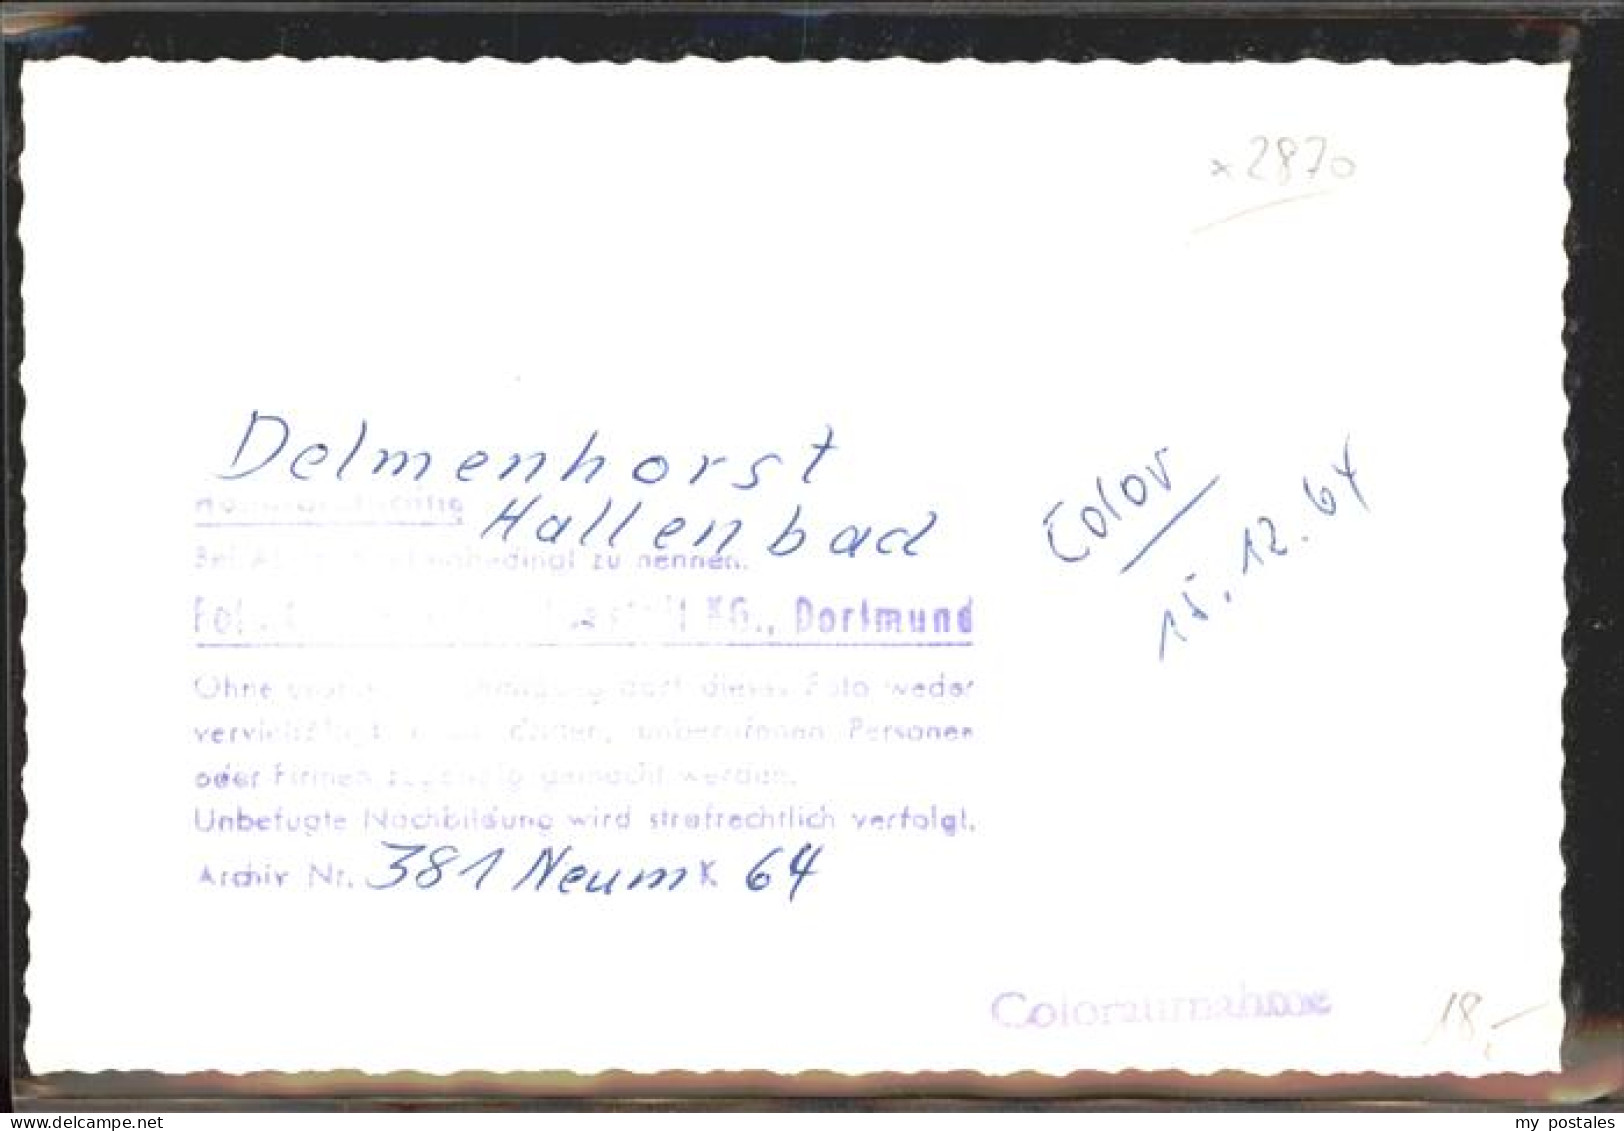 41390676 Delmenhorst Hallenbad Delmenhorst - Delmenhorst